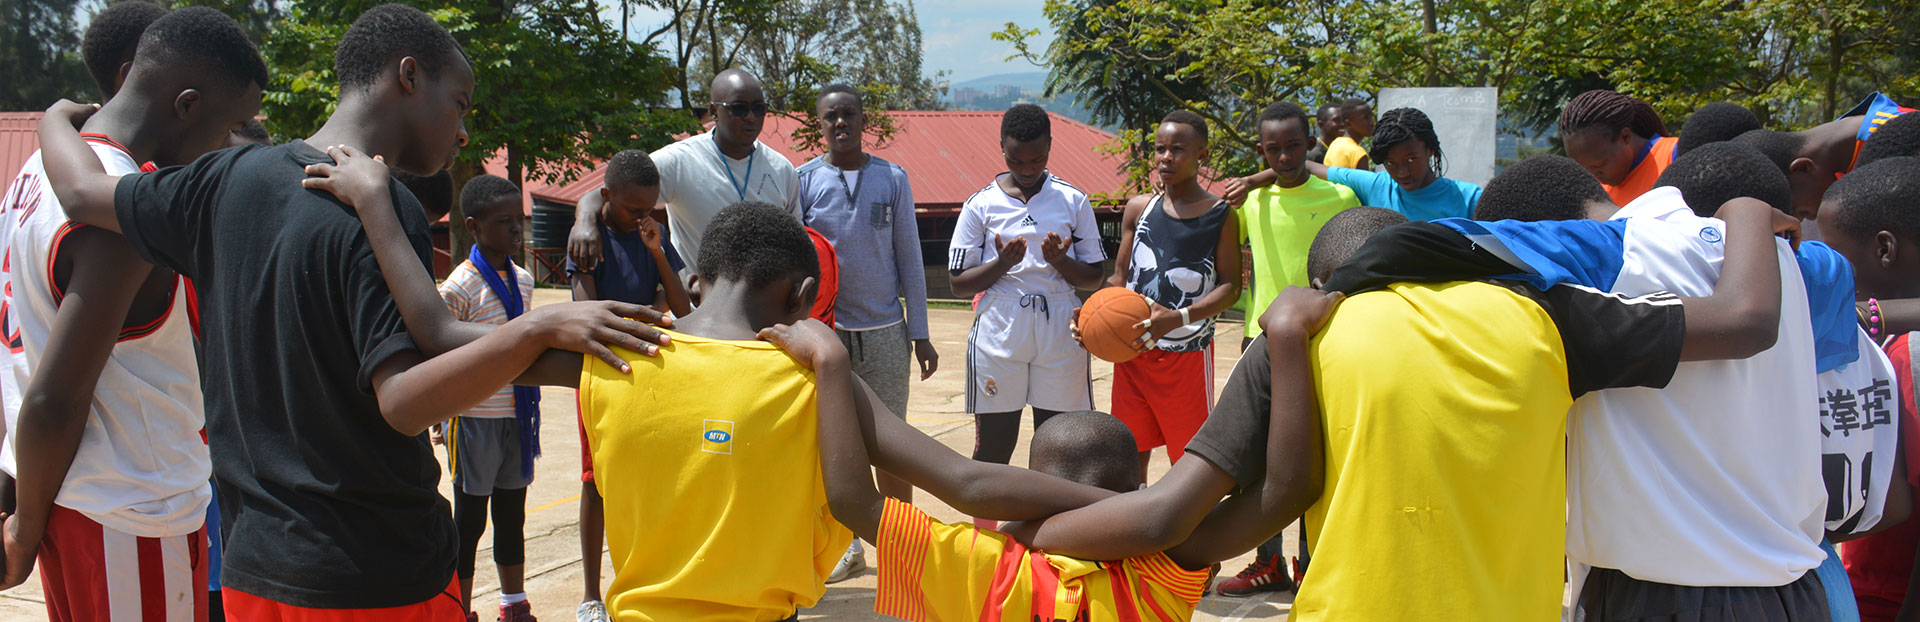 Ruanda: la conversione continua